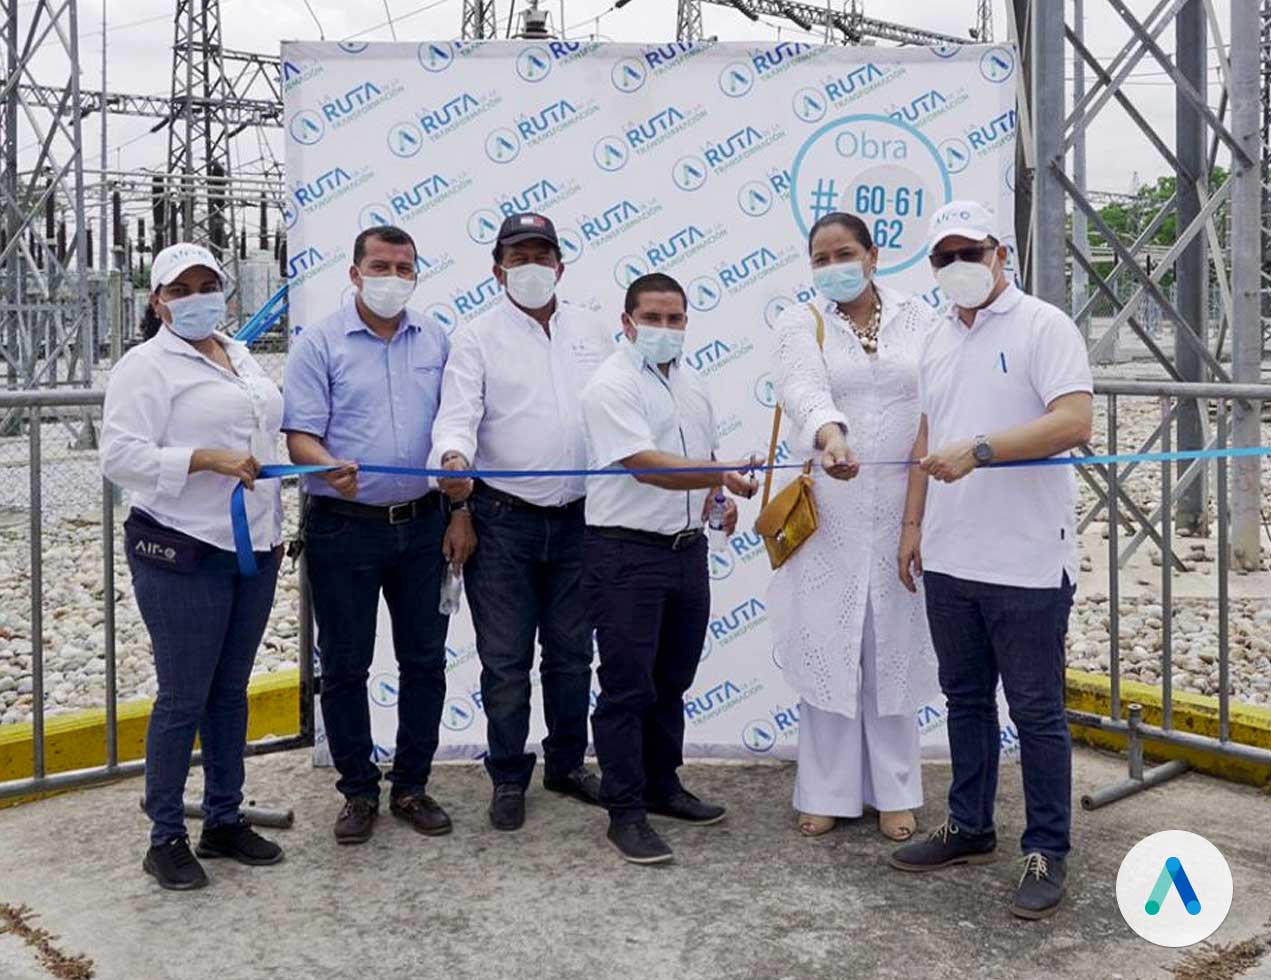 Air-e inauguró obras eléctricas en  el municipio de Fundación